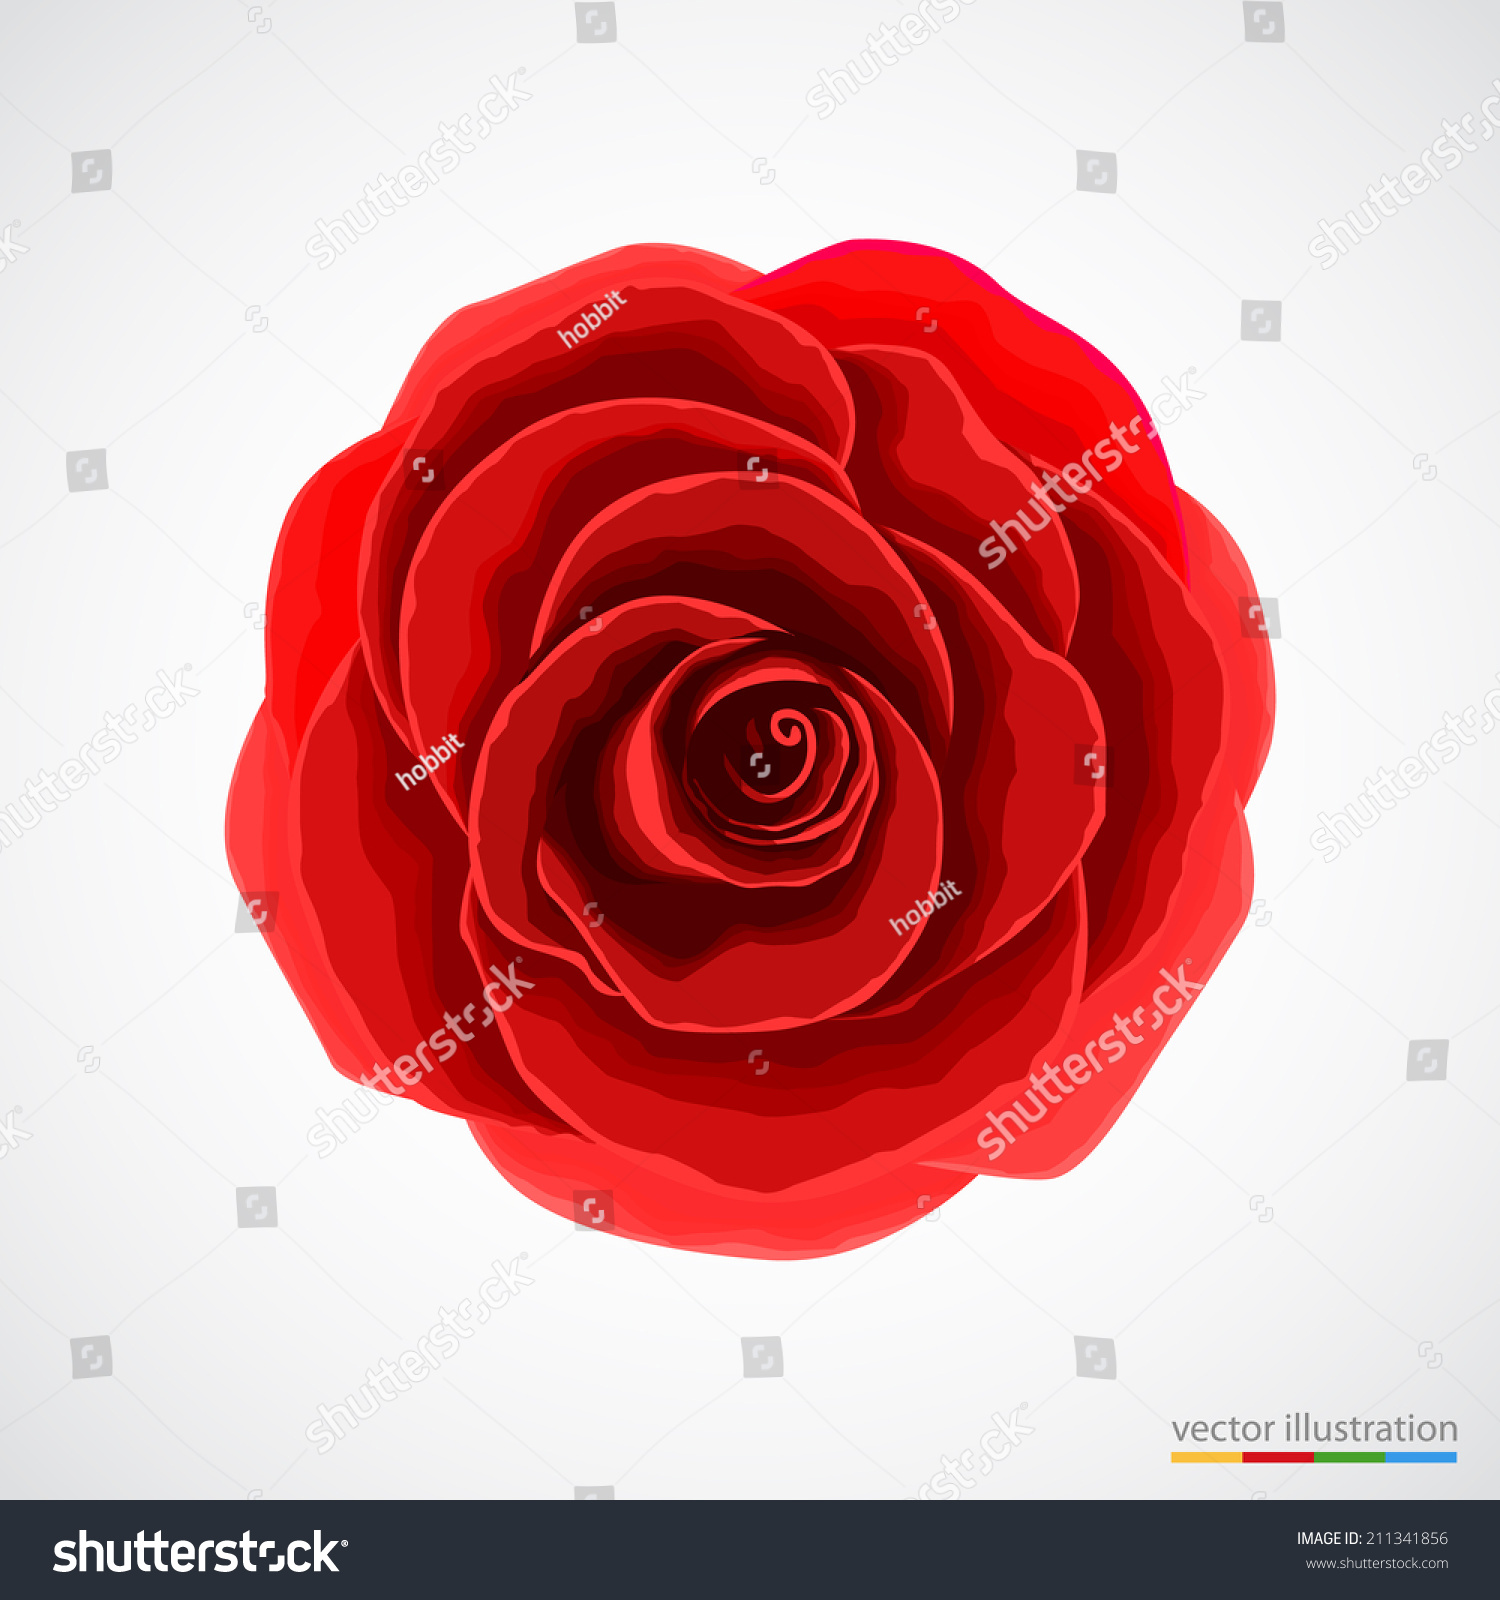 stock-vector-red-rose-on-white-background-vector-illustration-211341856.jpg